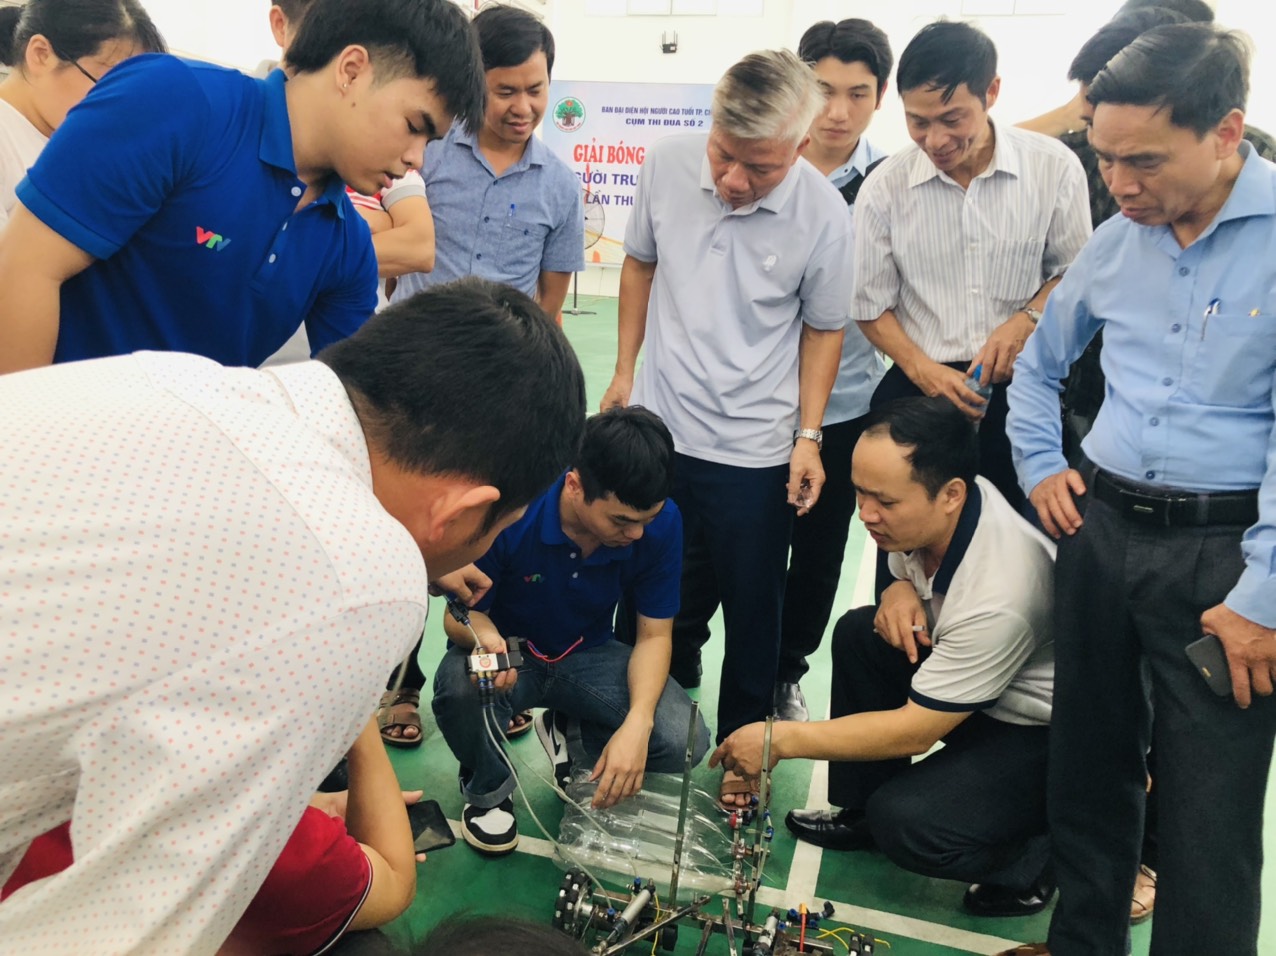 Sở Giáo dục và Đào tạo tỉnh Hải Dương phối hợp với Trường Đại học Sao Đỏ  tổ chức tập huấn ứng dụng công nghệ thông tin điều khiển robot